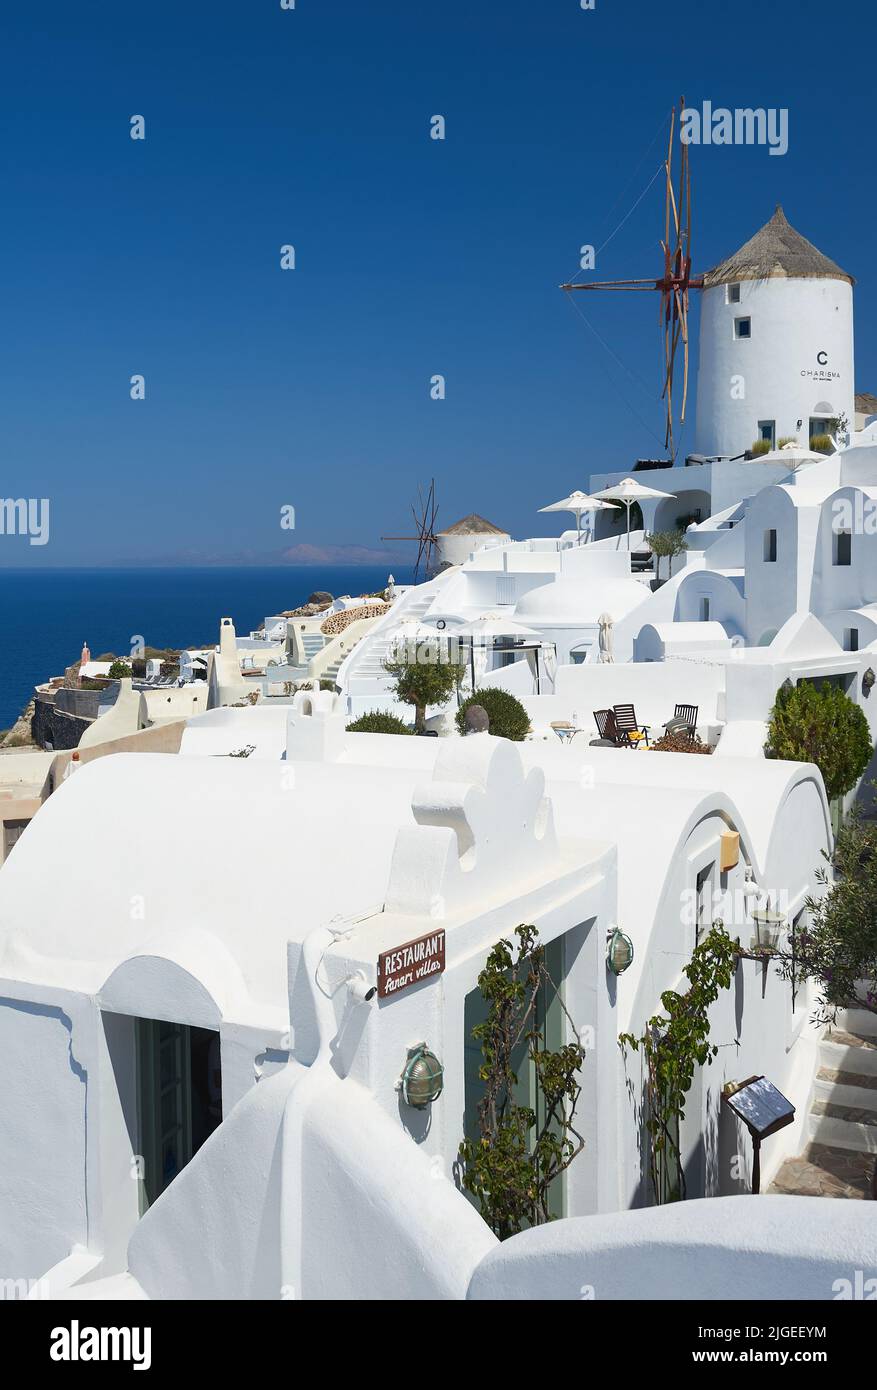 Oia oder Ia ein malerisches Dorf mit weiß getünchten Häusern auf der Insel Santorini, Teil der Kykladen-Inseln vor dem griechischen Festland Stockfoto